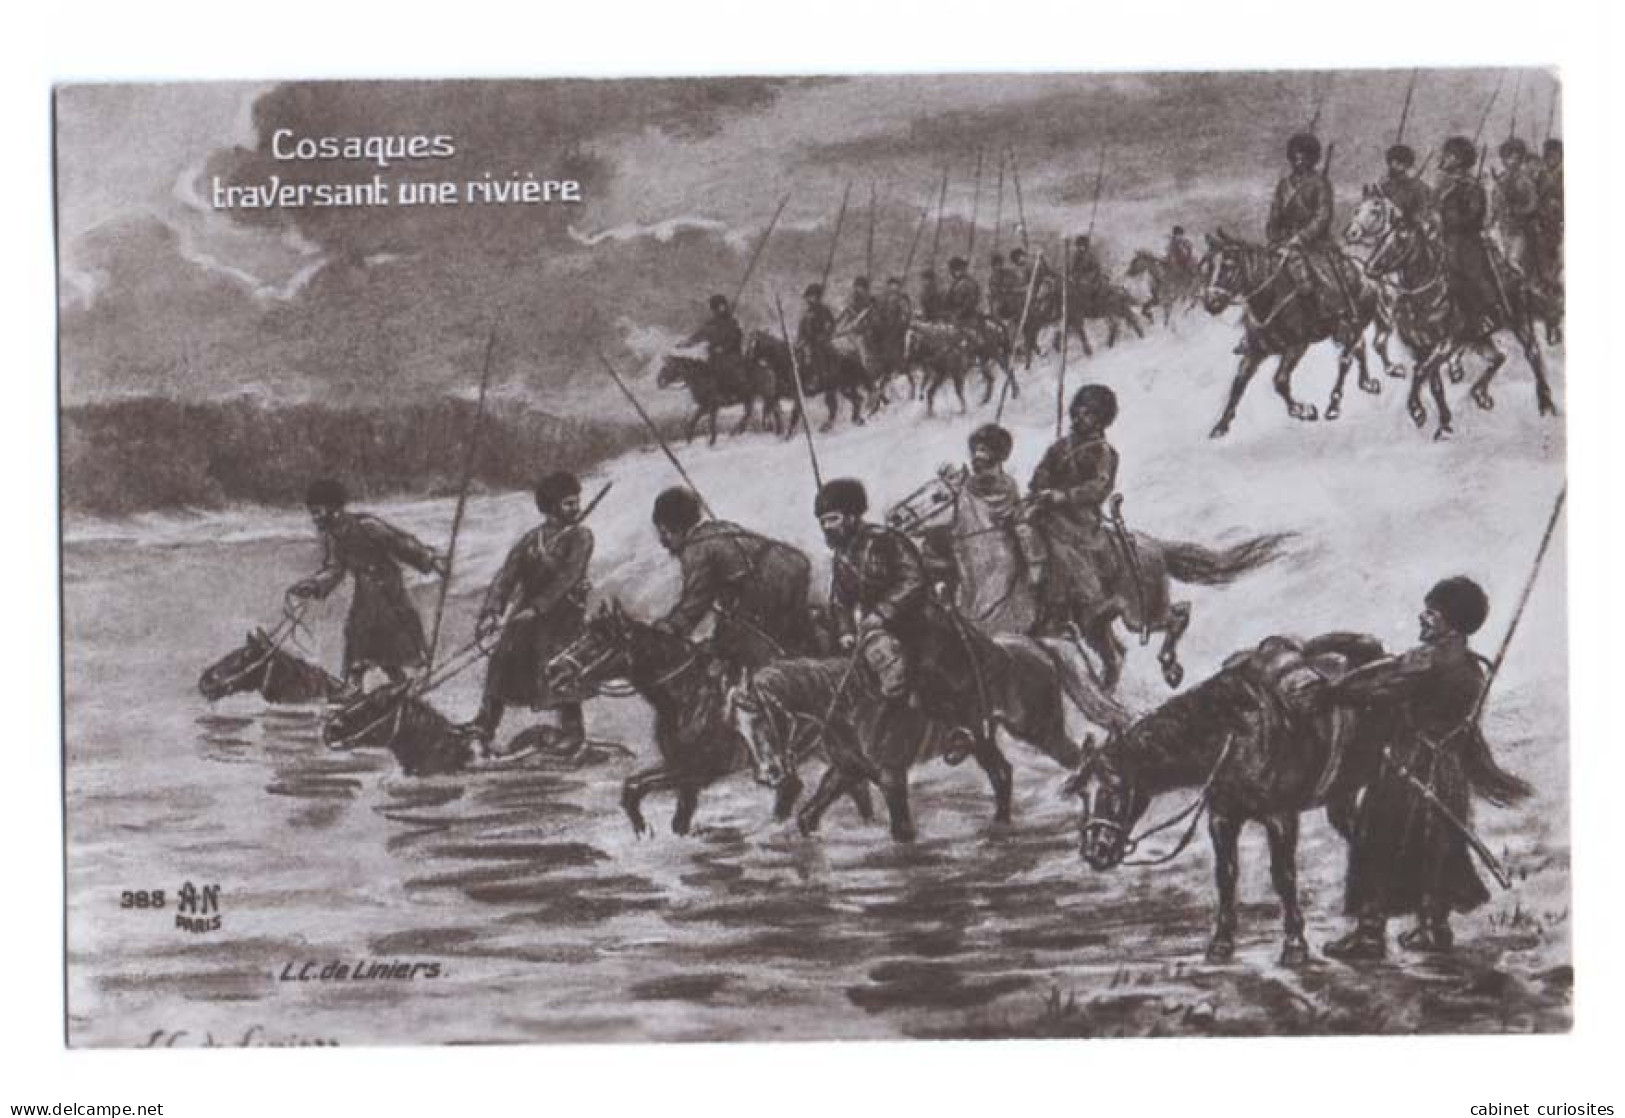 COSAQUES TRAVERSANT UNE RIVIÈRE - Illustration De L. C. De Liniers - Carte écrite En 1915 - Galerie Patriotique - Guerre 1914-18